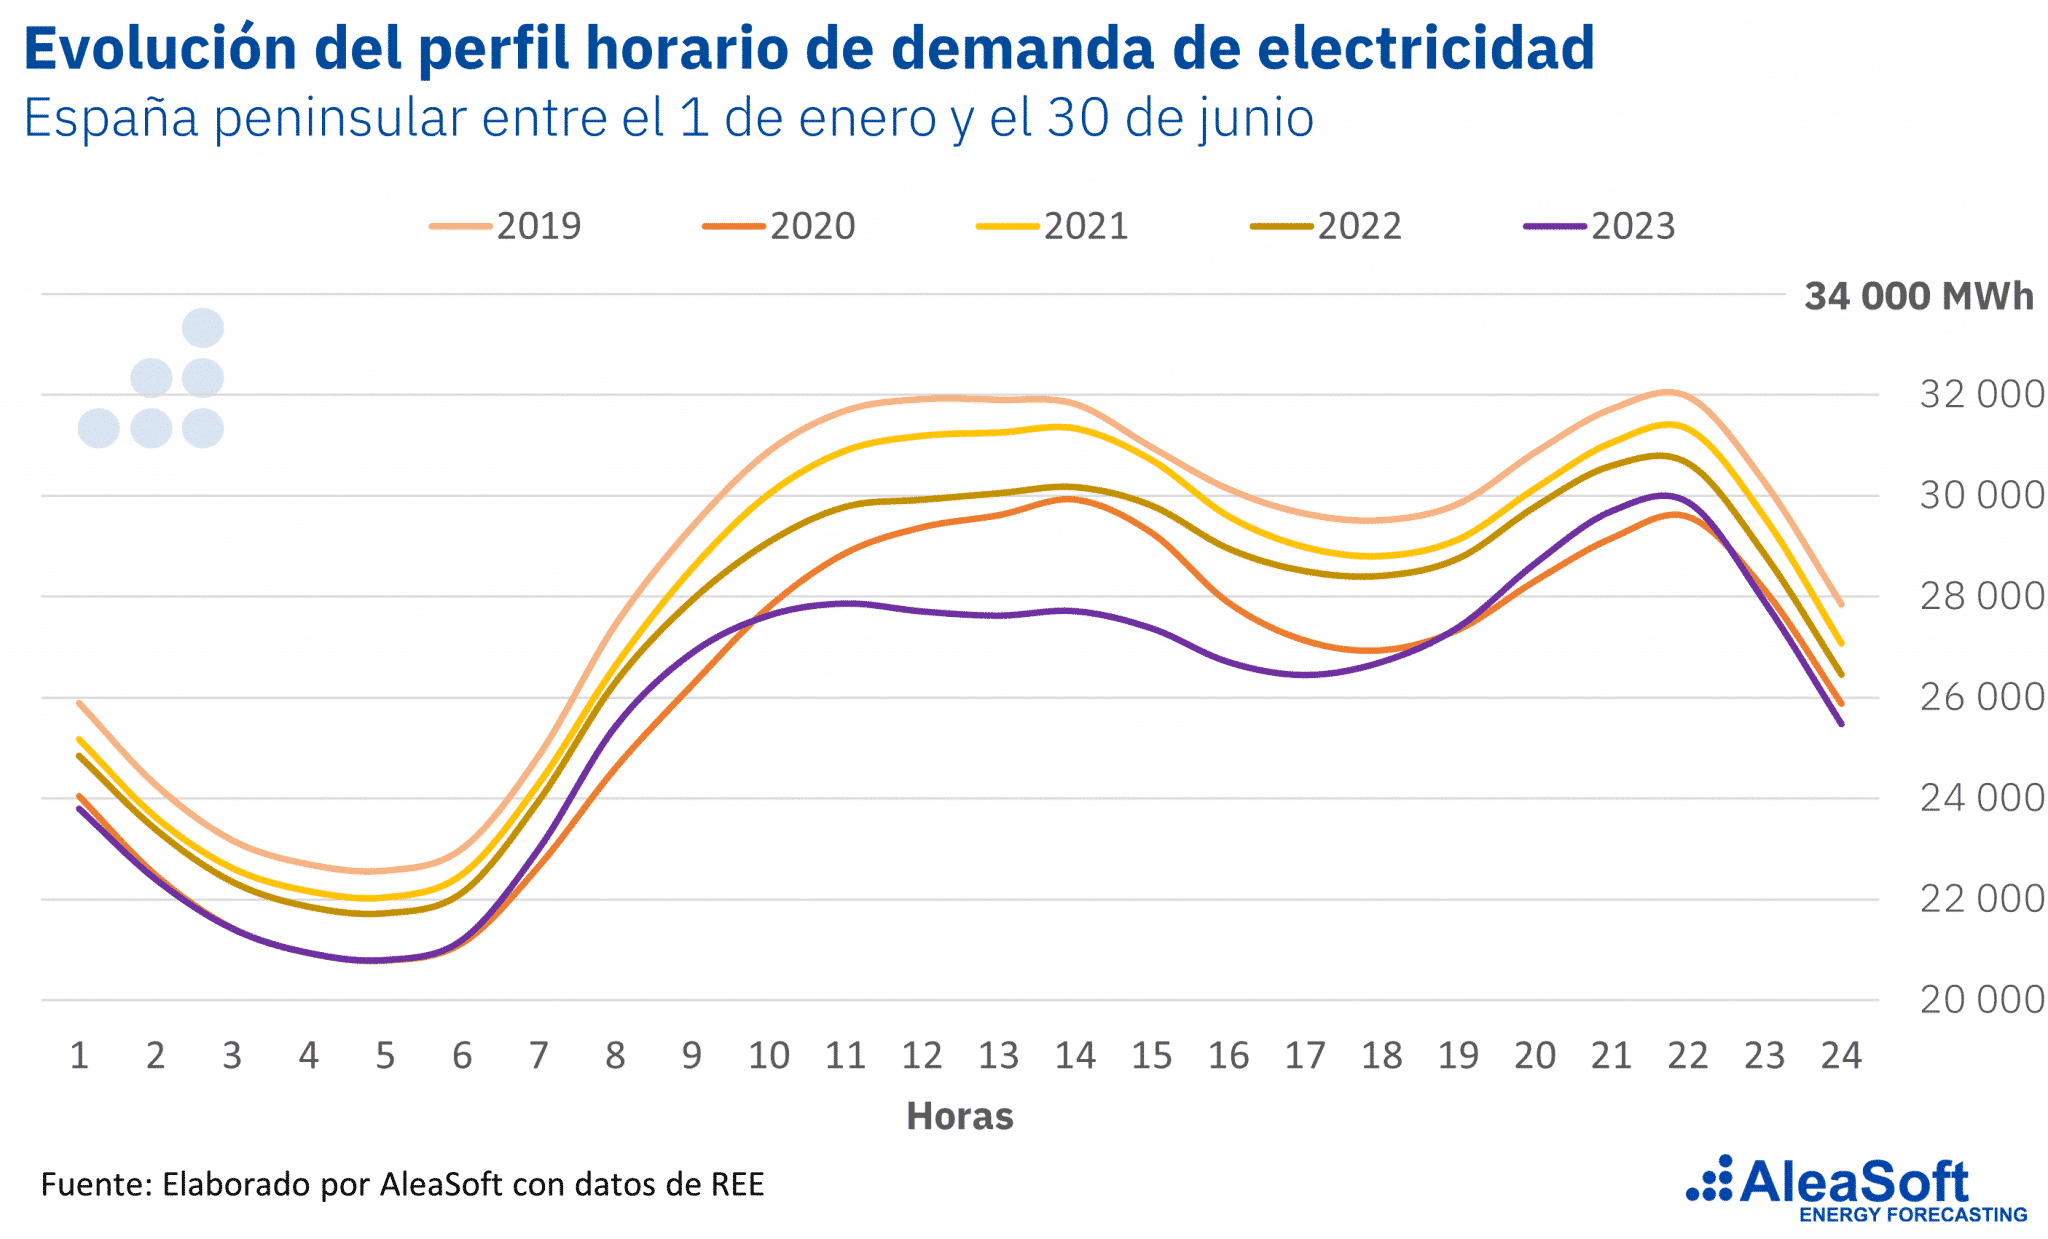 AleaSoft - Perfil horario promedio demanda electricidad Espana